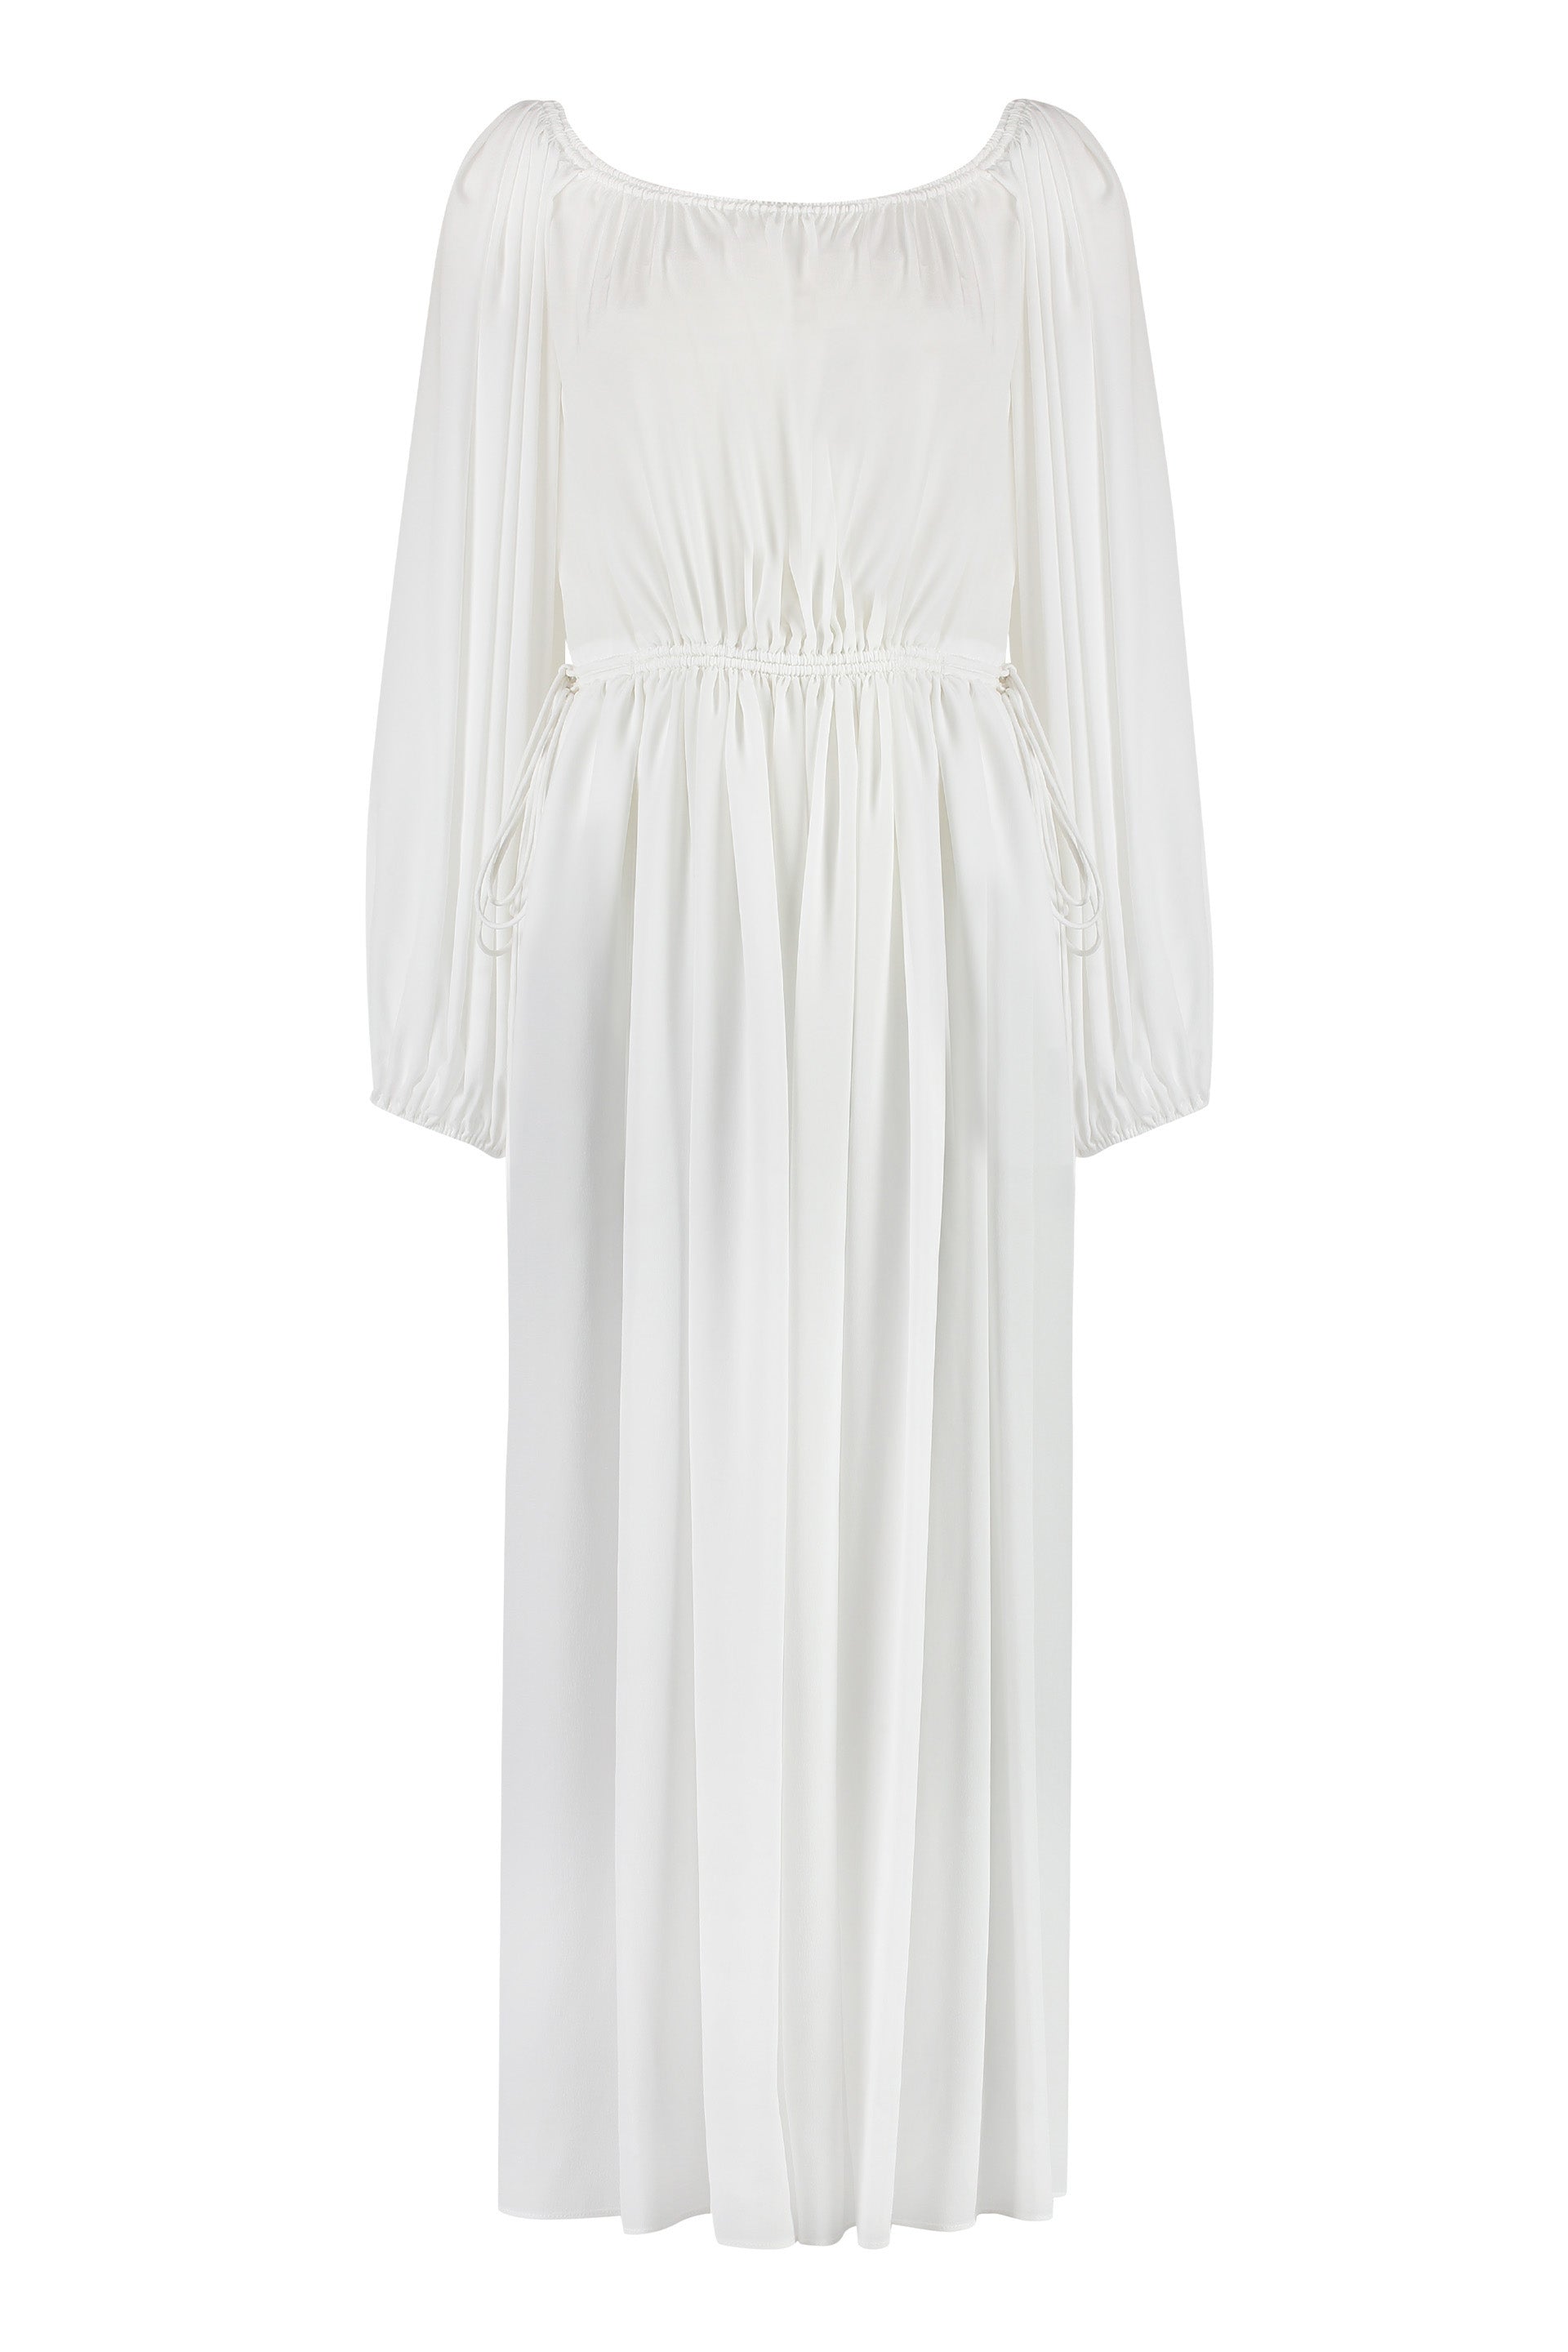 Shop Chloé Elegant White Silk Dress For Women